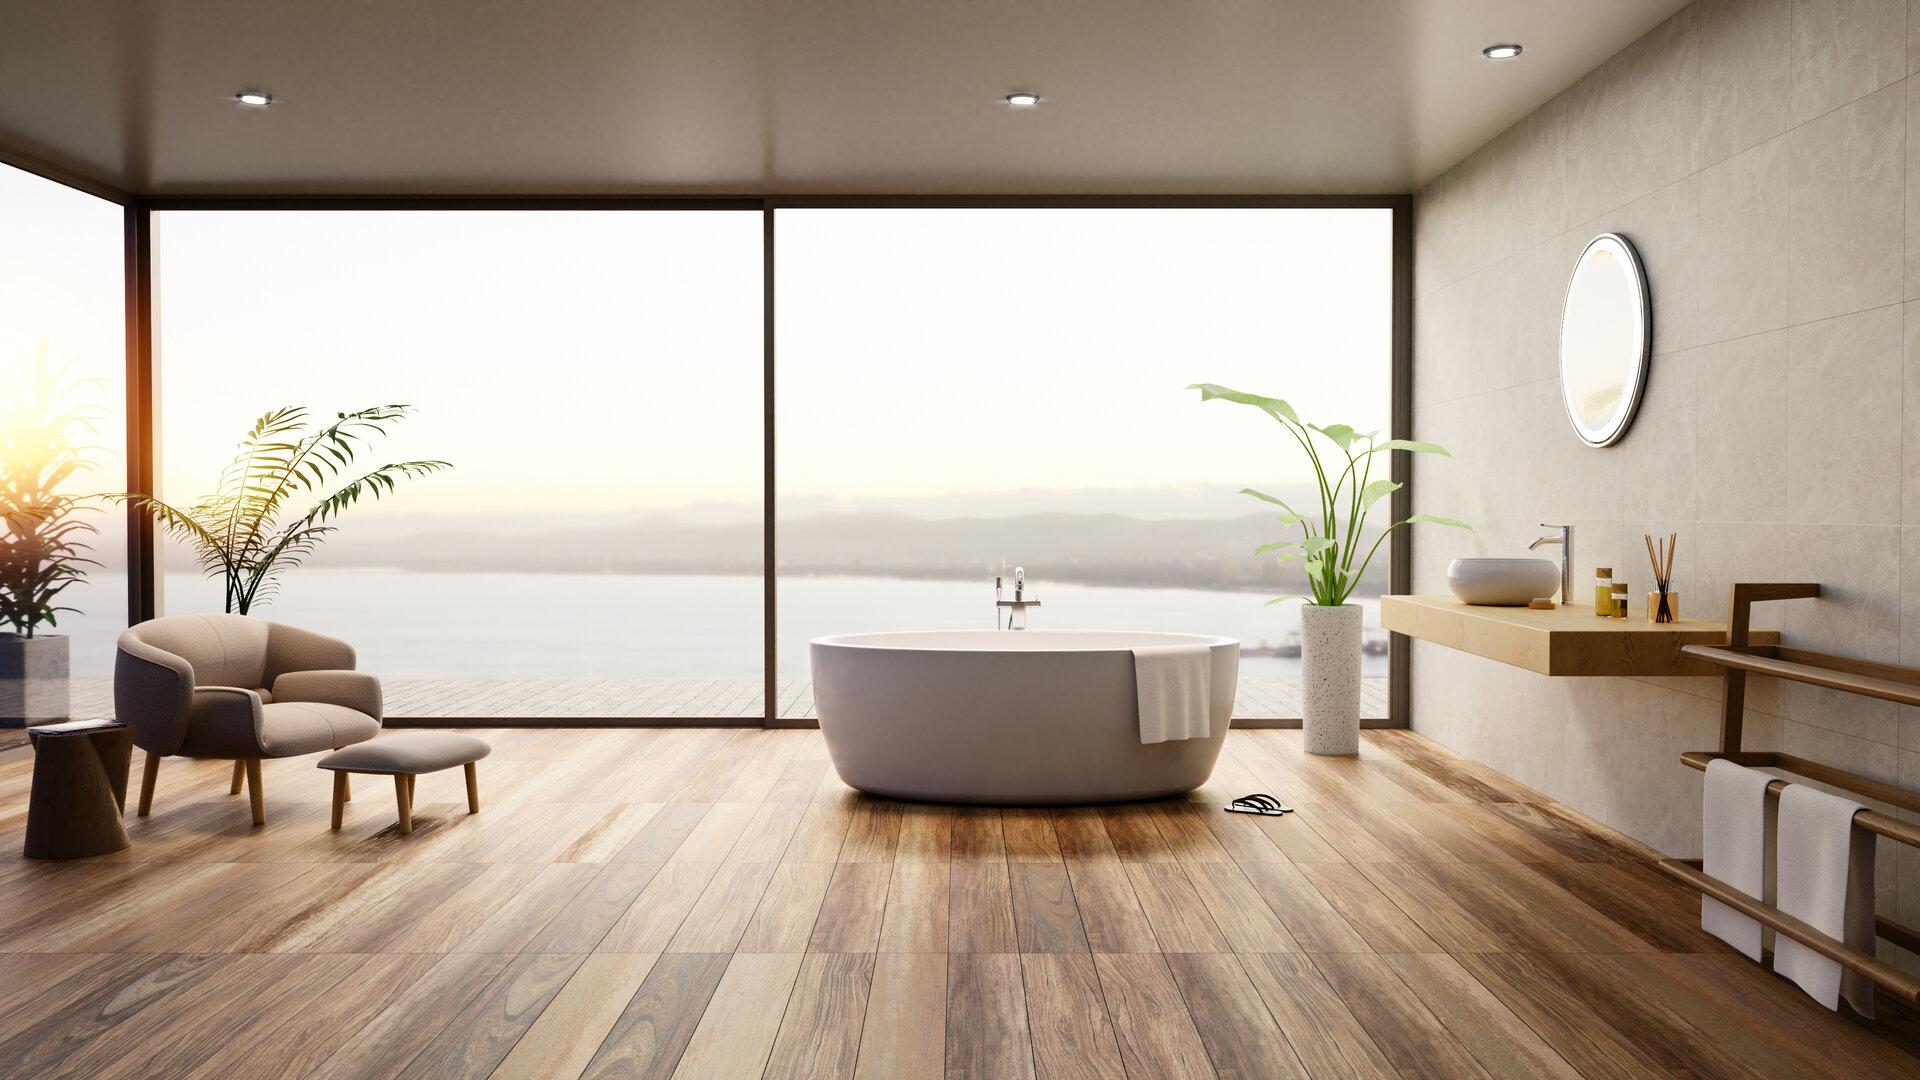 3D-Darstellung eines luxuriösen, möblierten Badezimmers mit runder Badewanne, Holzparkettboden und Meerblick bei Sonnenuntergang.